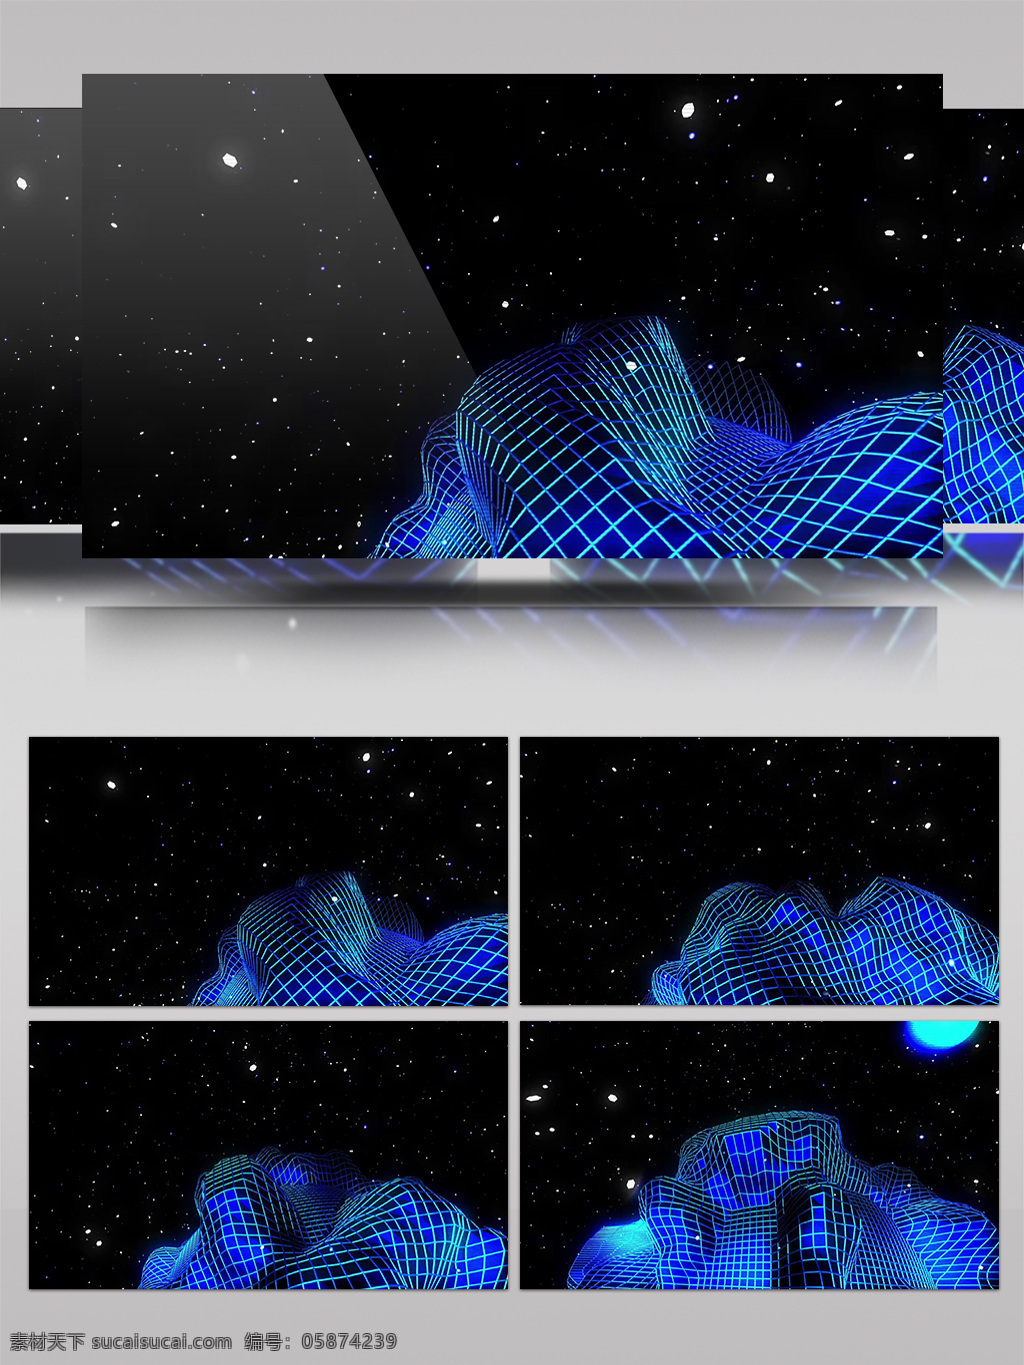 蓝色 网 那个 歌 视频 蓝色网格 幽蓝地图 光斑散射 视觉享受 手机壁纸 电脑屏幕保护 高清视频素材 3d视频素材 特效视频素材